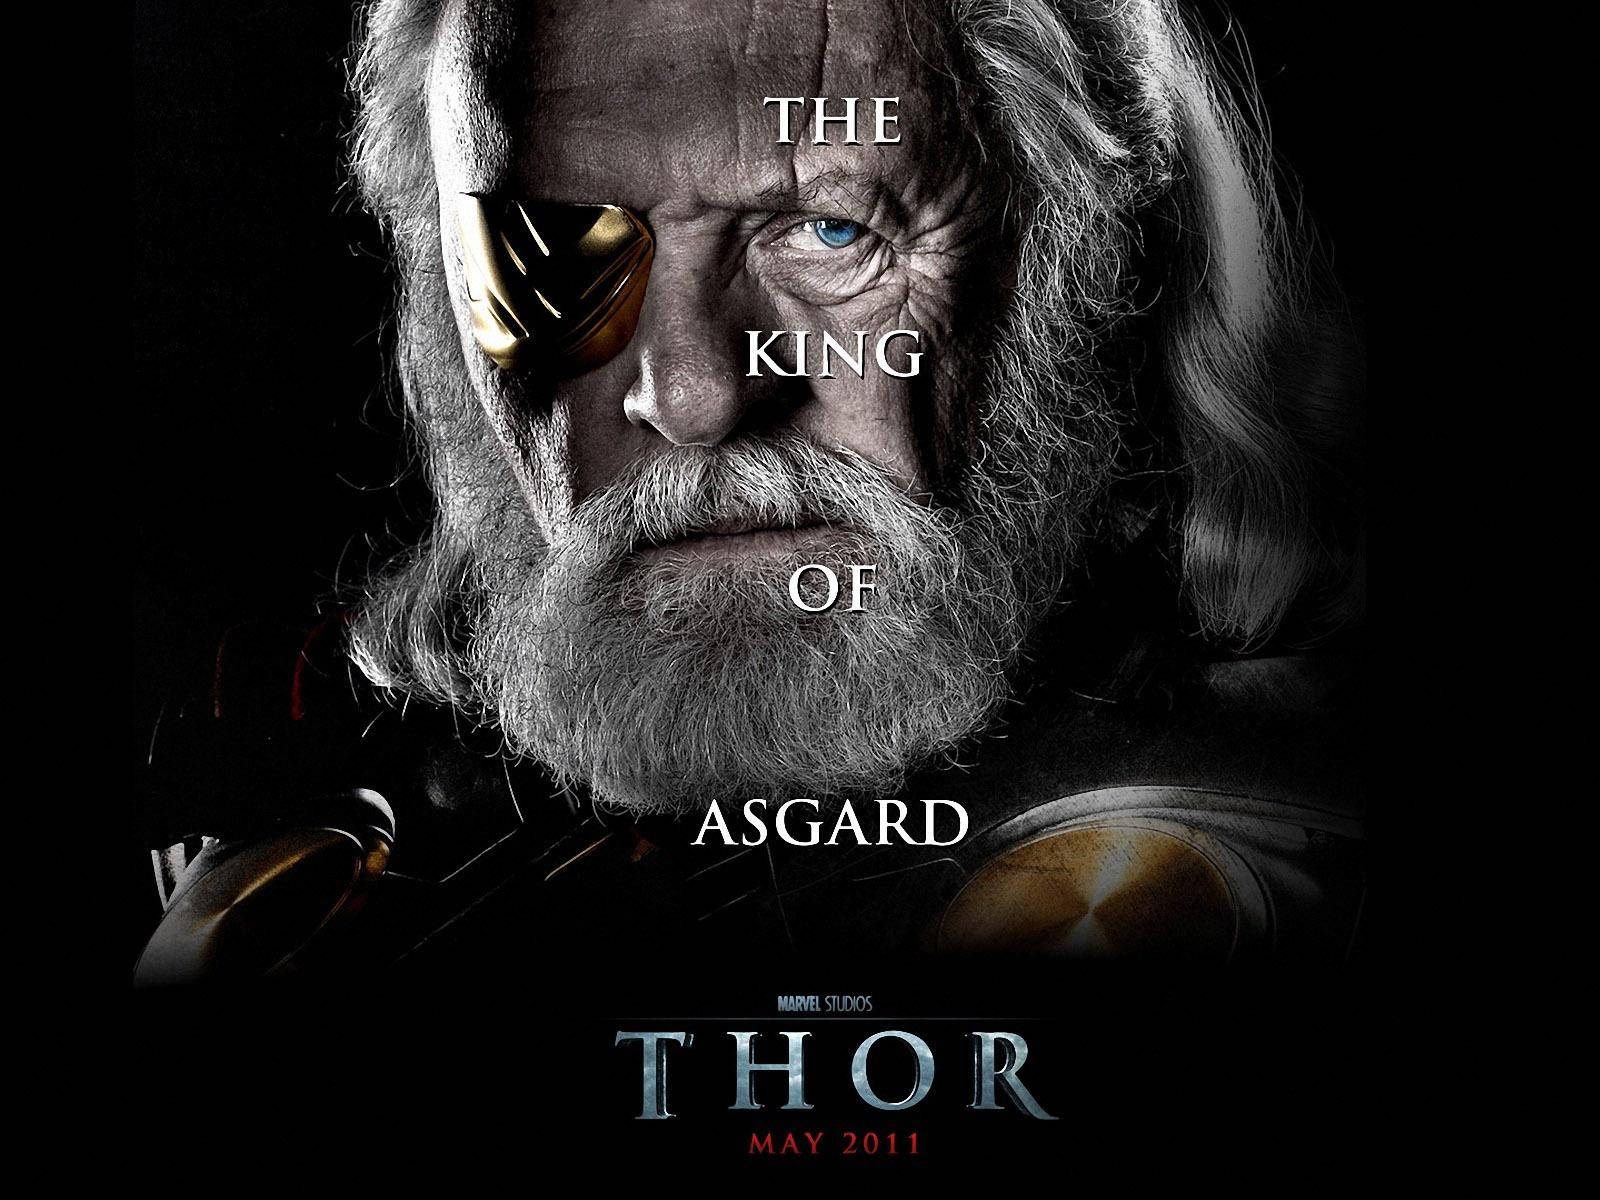 4kthor Film Odin Poster Wallpaper